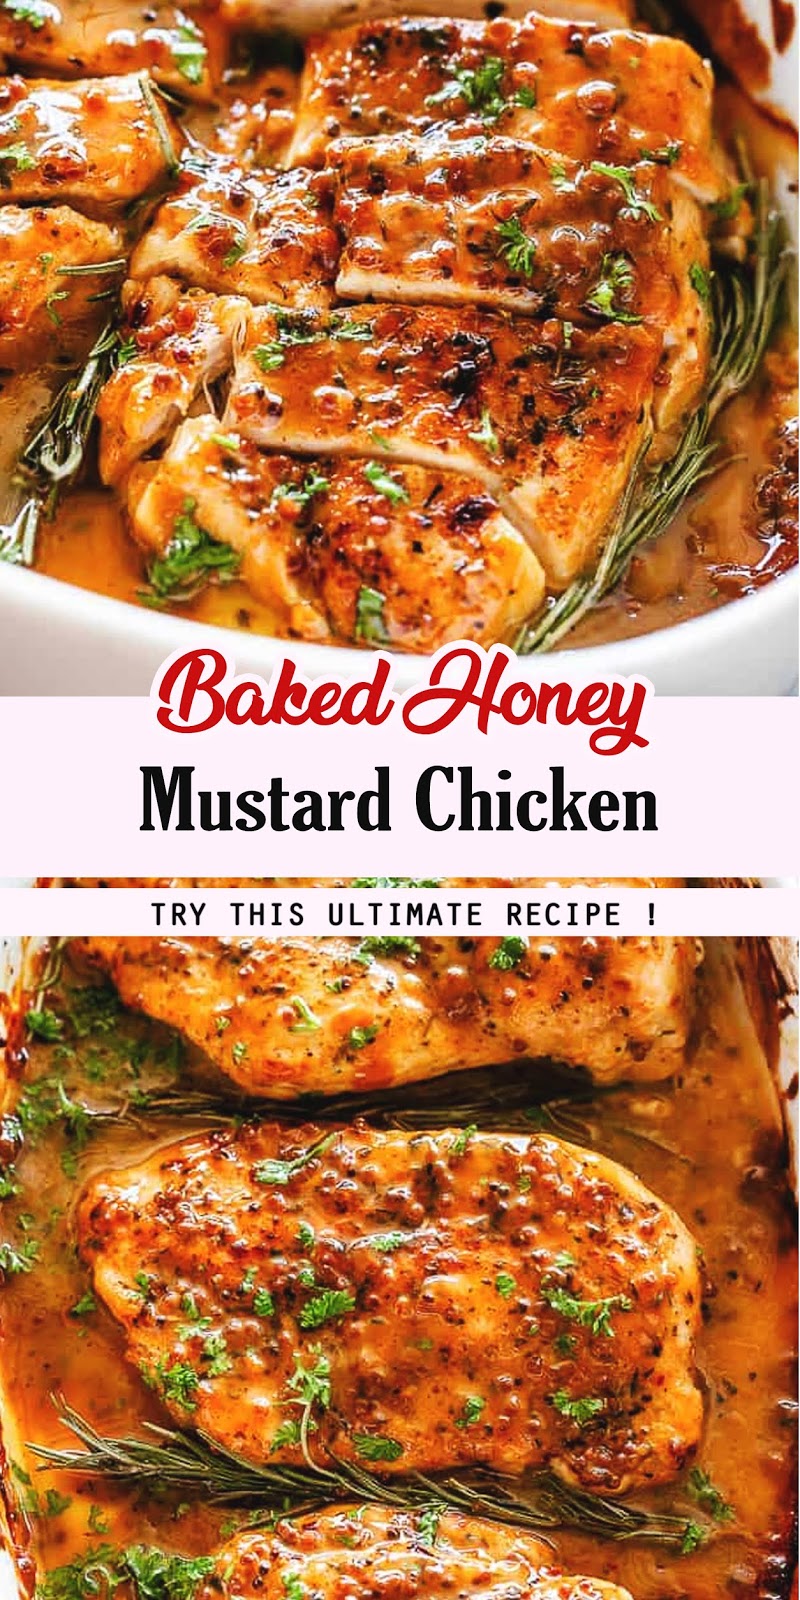 Baked Honey Mustard Chicken - 3 SECONDS